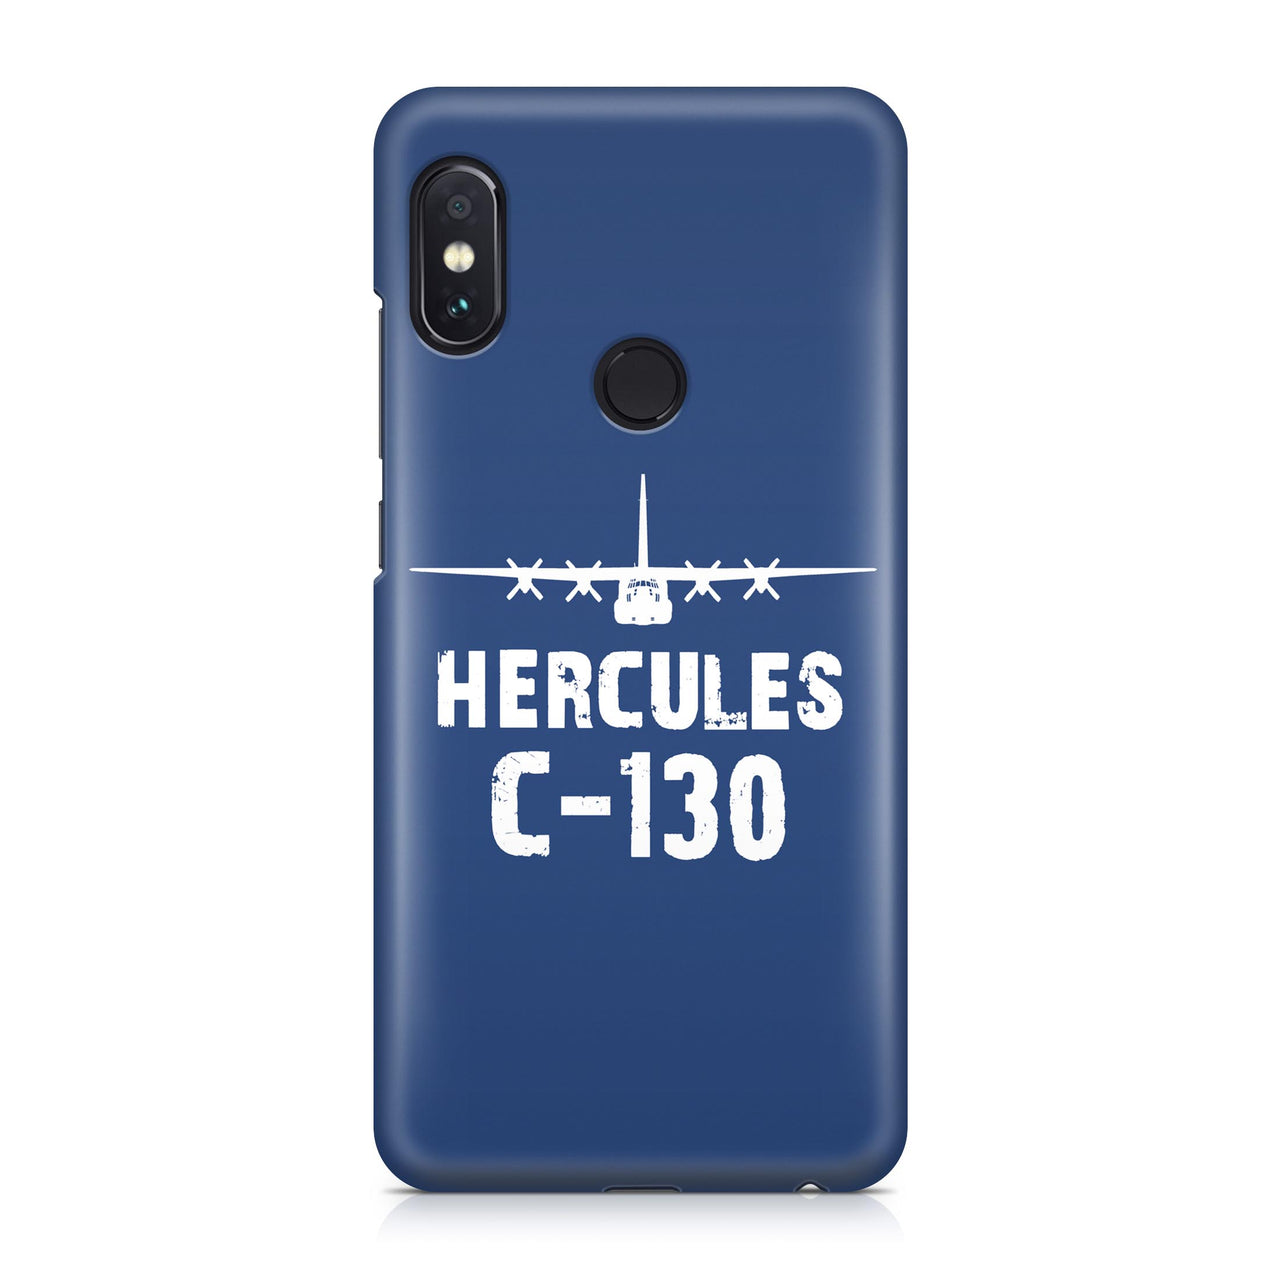 Hercules C-130 Plane & Designed Xiaomi Cases